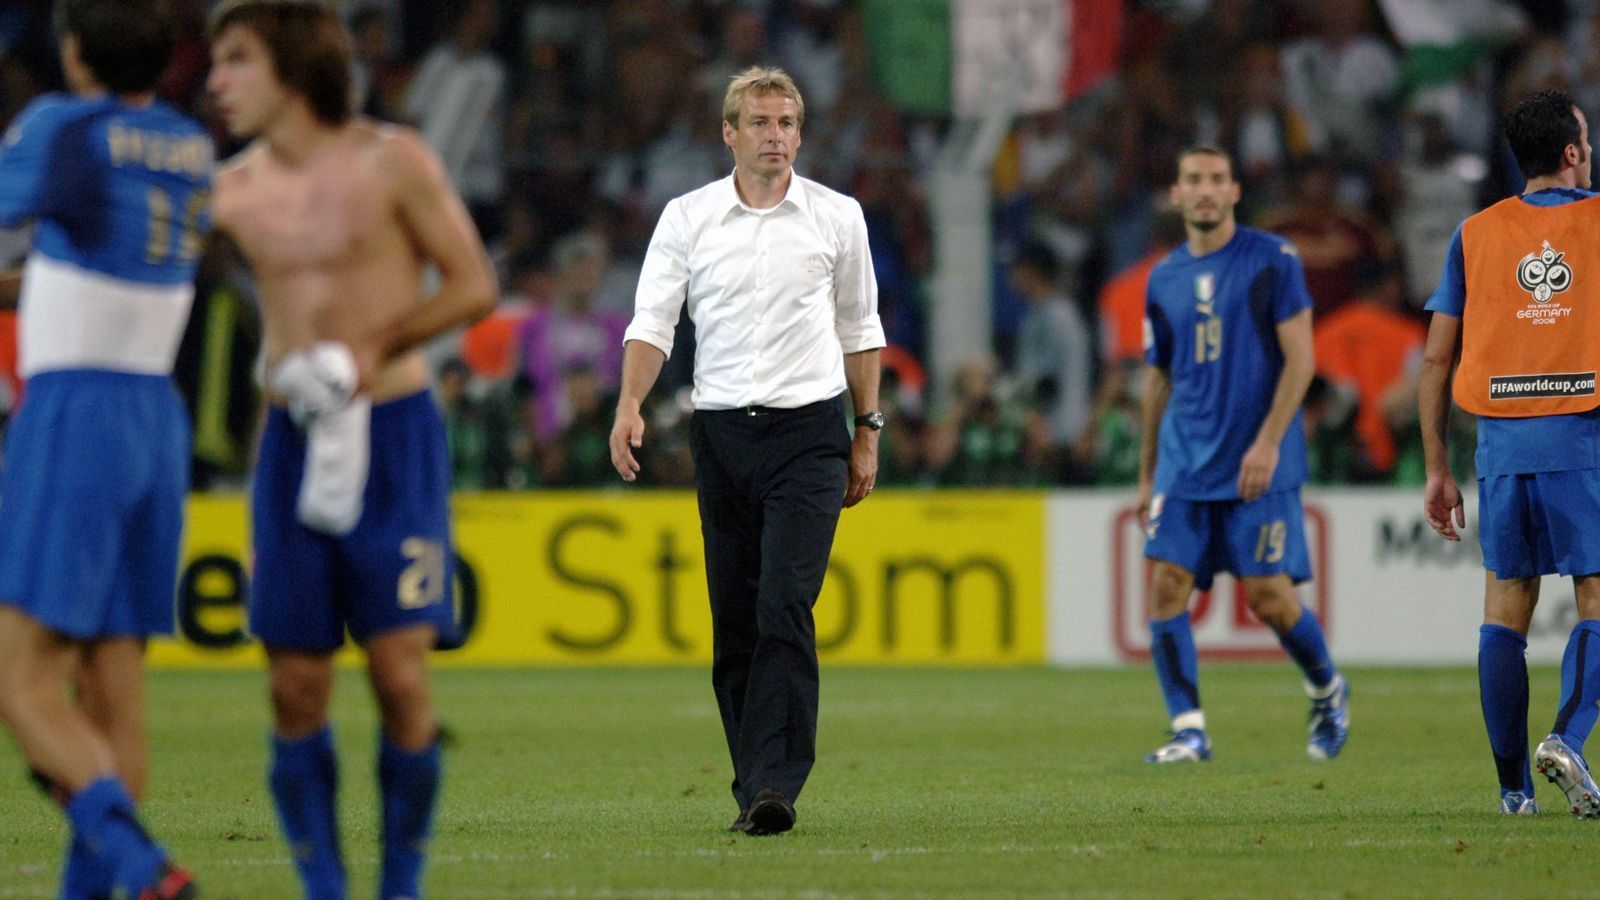 
                <strong>Jürgen Klinsmann</strong><br>
                Trainiert wurden die tragischen WM-Helden von 2006 von Jürgen Klinsmann. Der Ex-Welt- und -Europameister übernahm 2004 die Rolle des Nationaltrainers, ohne zuvor als Coach gearbeitet zu haben. Dennoch gelang es dem früheren Stürmer eine schlagkräftige Truppe für die WM im eigenen Land aufzubauen. Dabei nahm er keine Rücksicht auf frühere Weggefährten, verbannte etwa den langjährigen Stammkeeper Oliver Kahn vor der WM 2006 auf die Bank. Nach dem dritten Platz bei der Endrunde trat Klinsmann zurück und sein Assistent Joachim Löw übernahm. Klinsmann kehrte 2008 als Bayern-Trainer nach Deutschland zurück, scheiterte aber ebenfalls innerhalb recht kurzer Zeit, wie von Ende 2019 bis Anfang 2020 bei der Hertha. Sein langfristigstes Projekt war Klinsmanns Job als US-Nationalcoach von 2011 bis 2016.
              